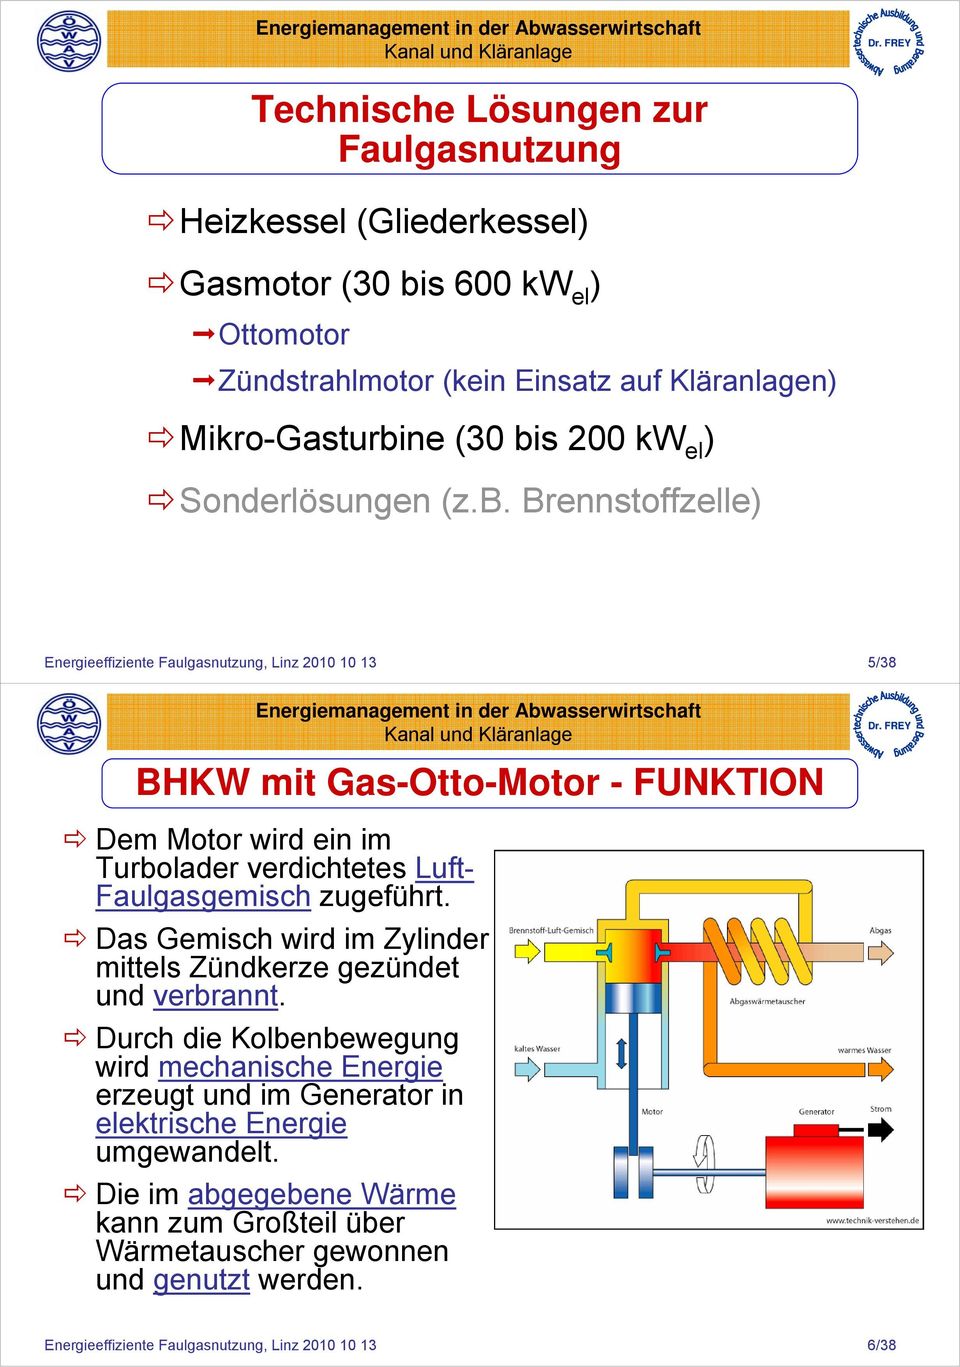 Brennstoffzelle) Energieeffiziente Faulgasnutzung, Linz 2010 10 13 5/38 BHKW mit Gas-Otto-Motor - FUNKTION Dem Motor wird ein im Turbolader verdichtetes Luft- Faulgasgemisch